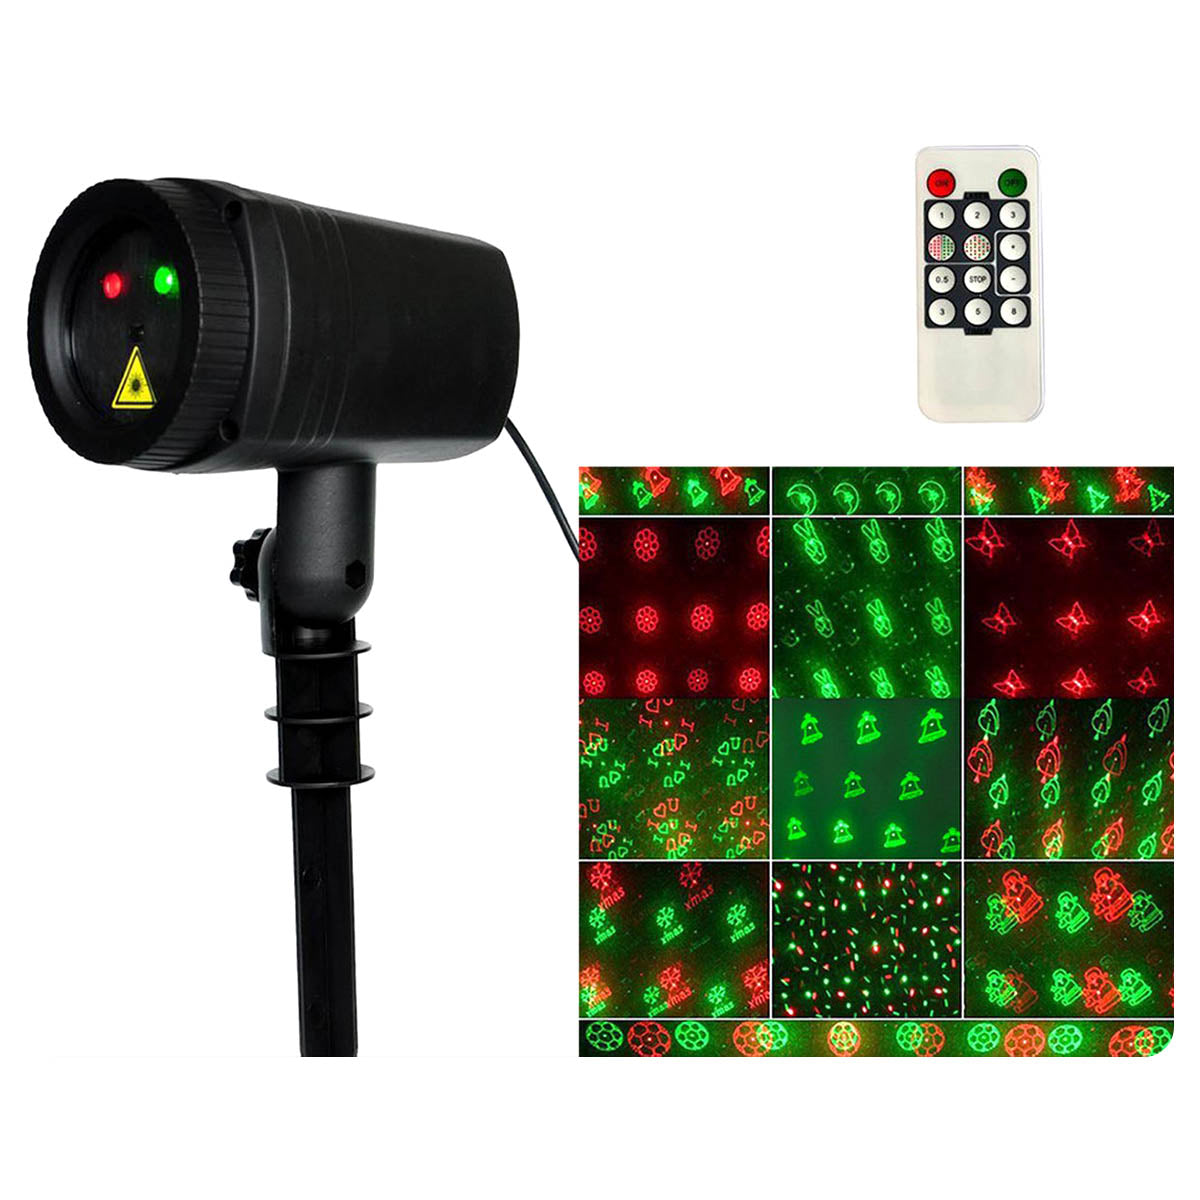 Ariko Laser-Gartenbeleuchtung - Bewegte Beleuchtung - Lasershow - Stimmungslicht - Weihnachtsbeleuchtung - Gartenbeleuchtung - Wasserdicht - Rot und Grün